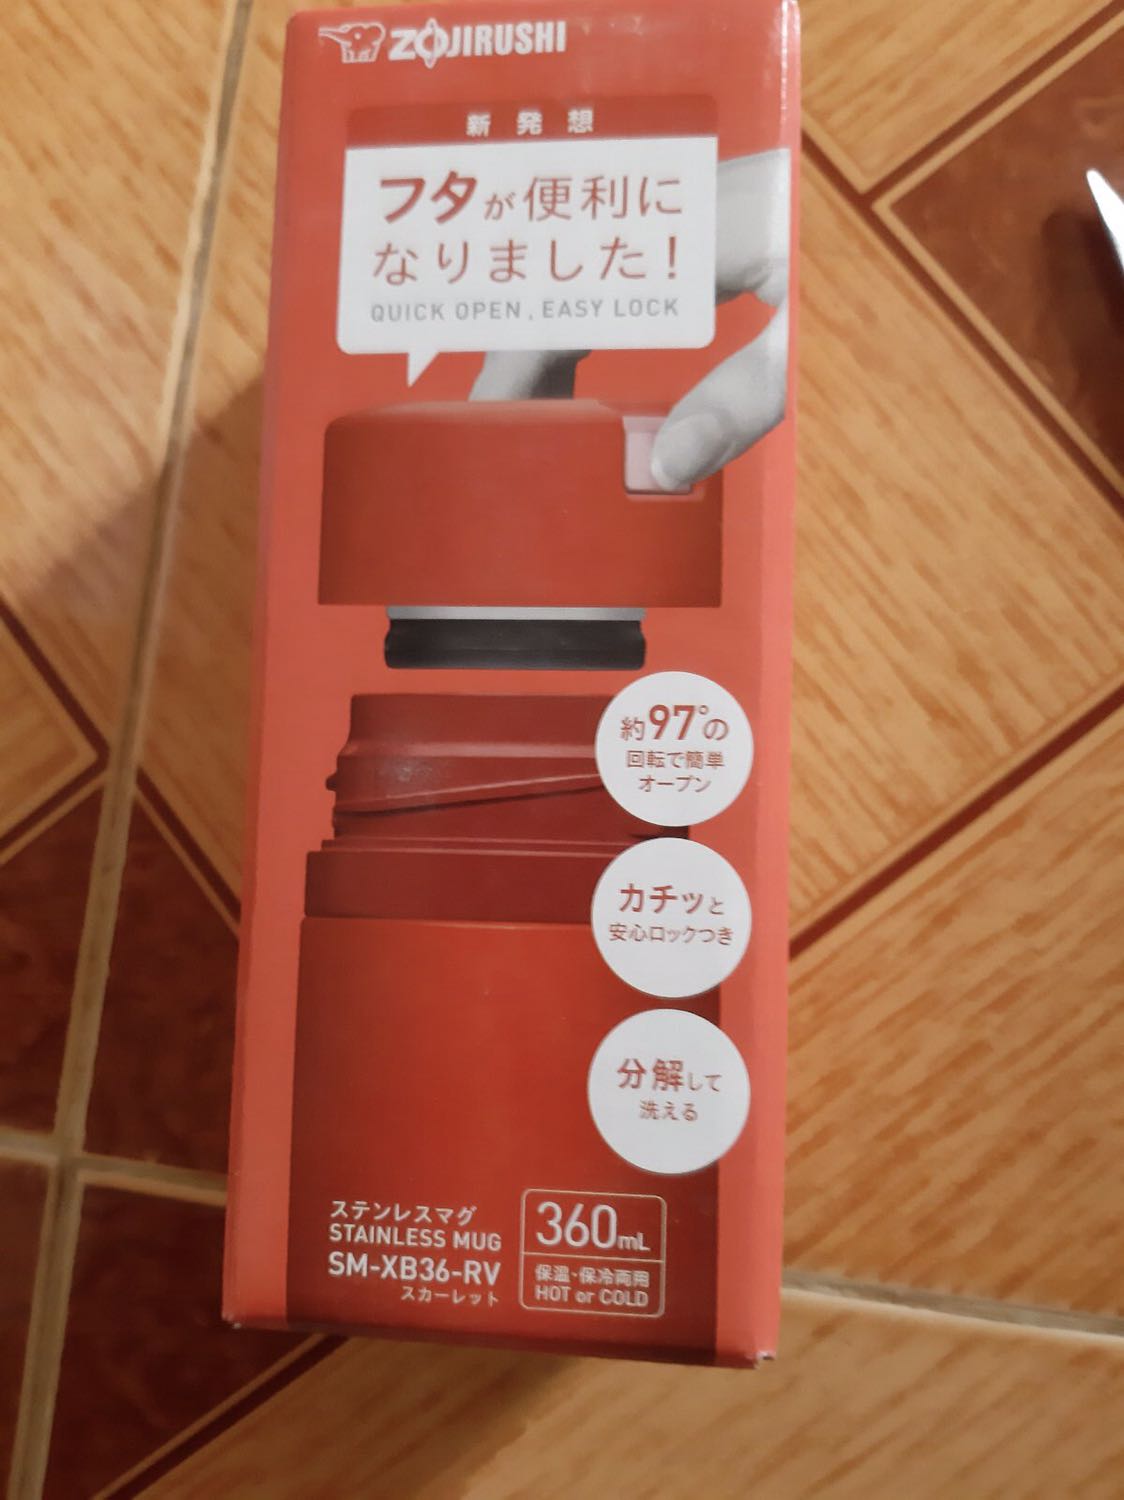 Bình giữ nhiệt nóng lạnh Zojirushi SM-XB36-RV 360ml(Màu Đỏ), bảo hành giữ nhiệt 1 năm chính hãng